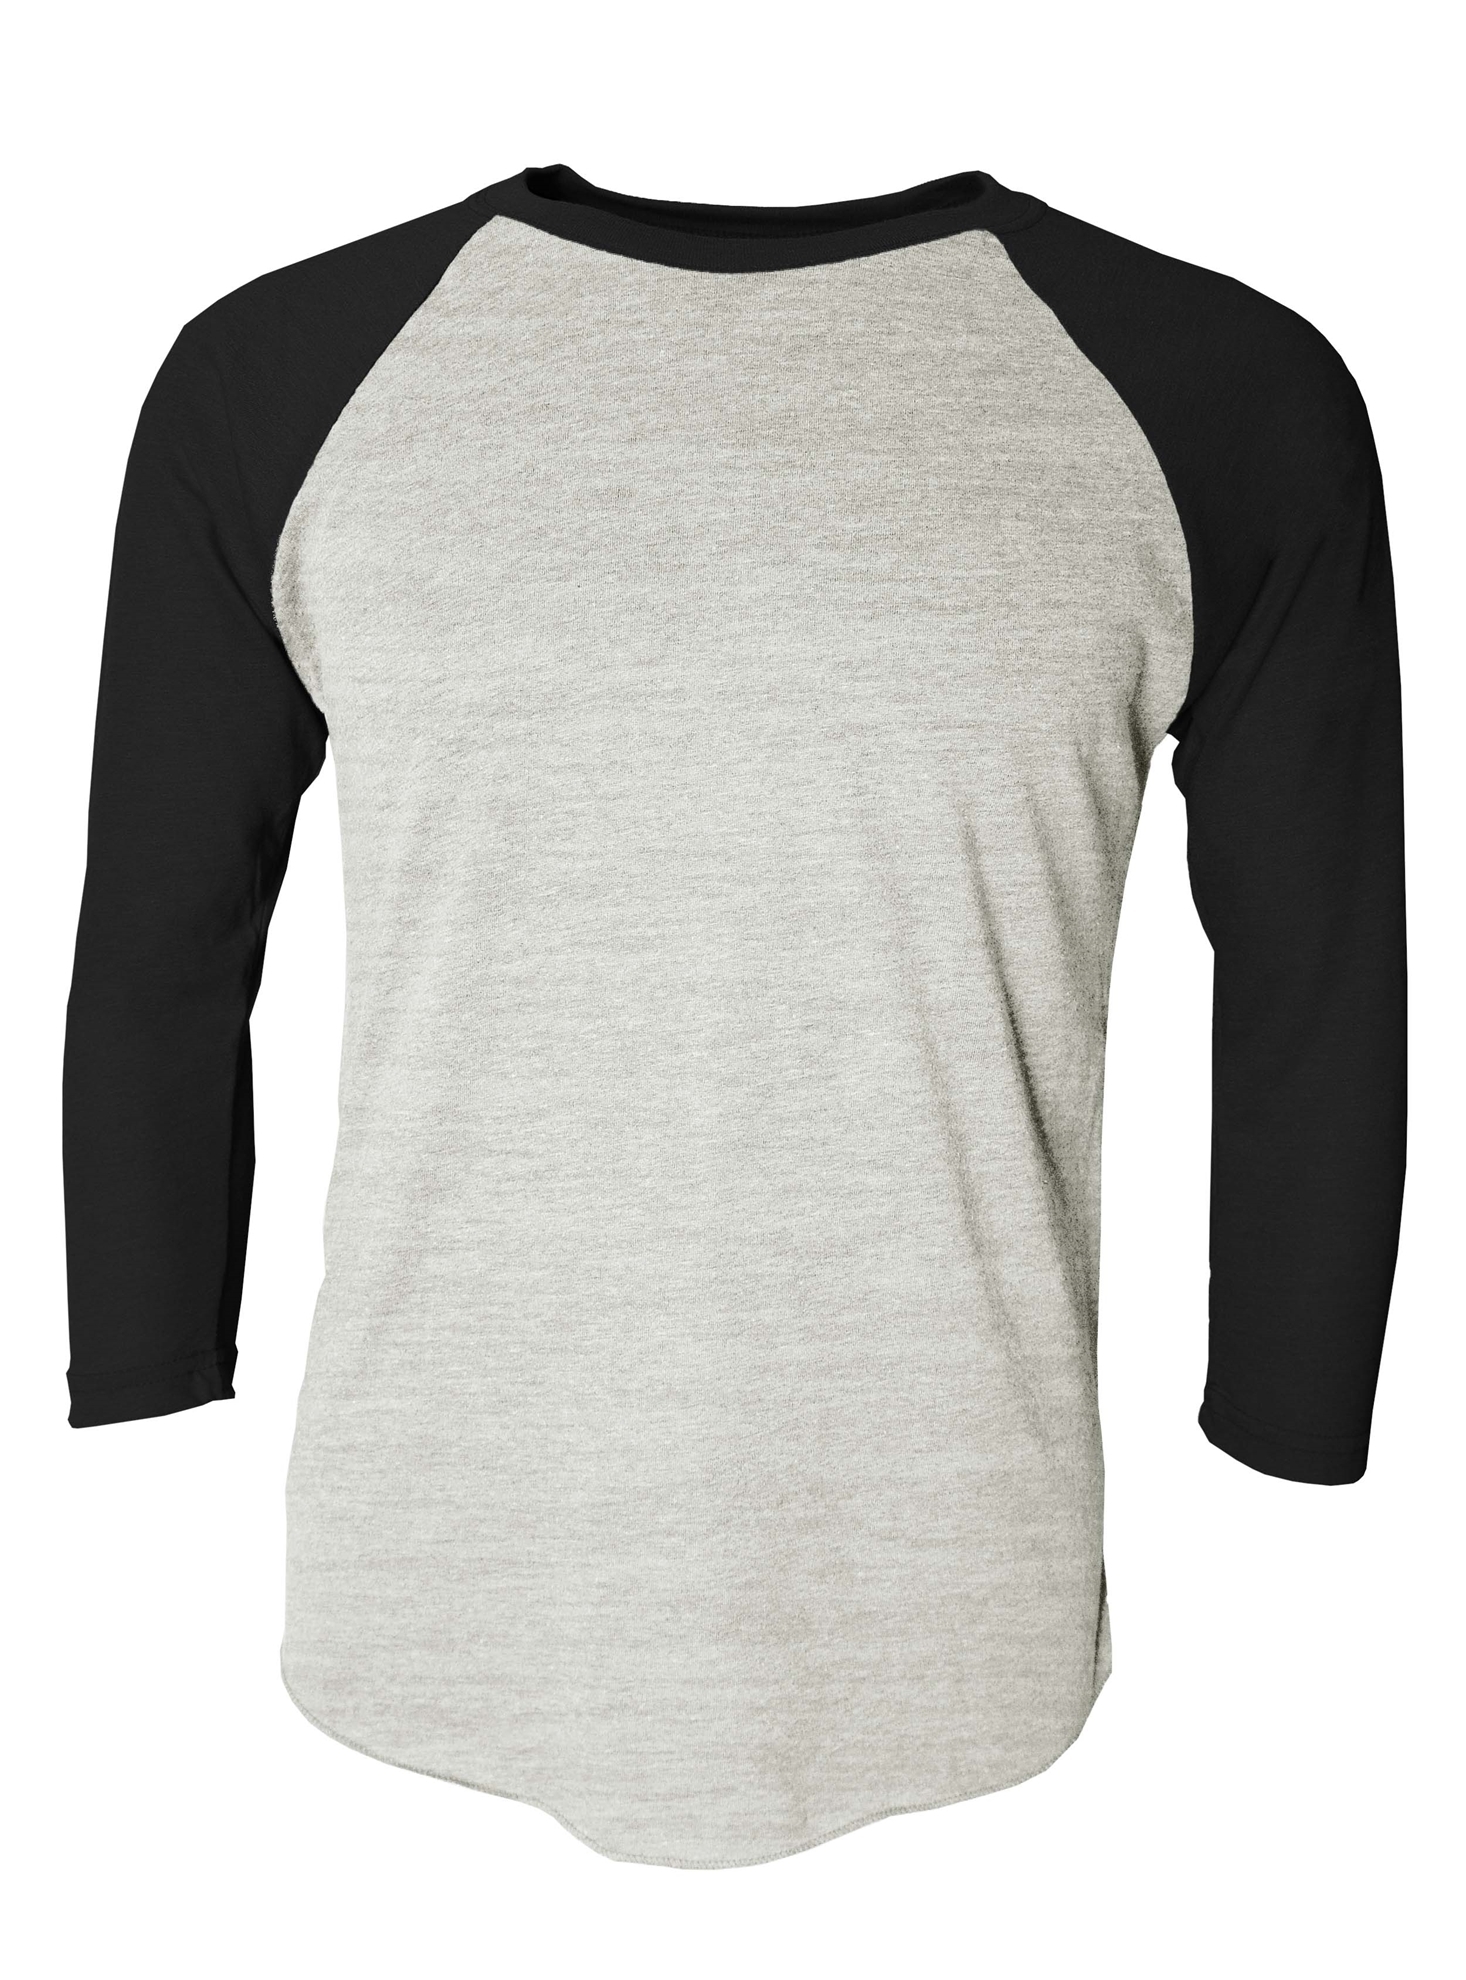 BAW Athletic Wear TR70 - Adult Tri-Blend Crewneck T-Shirt